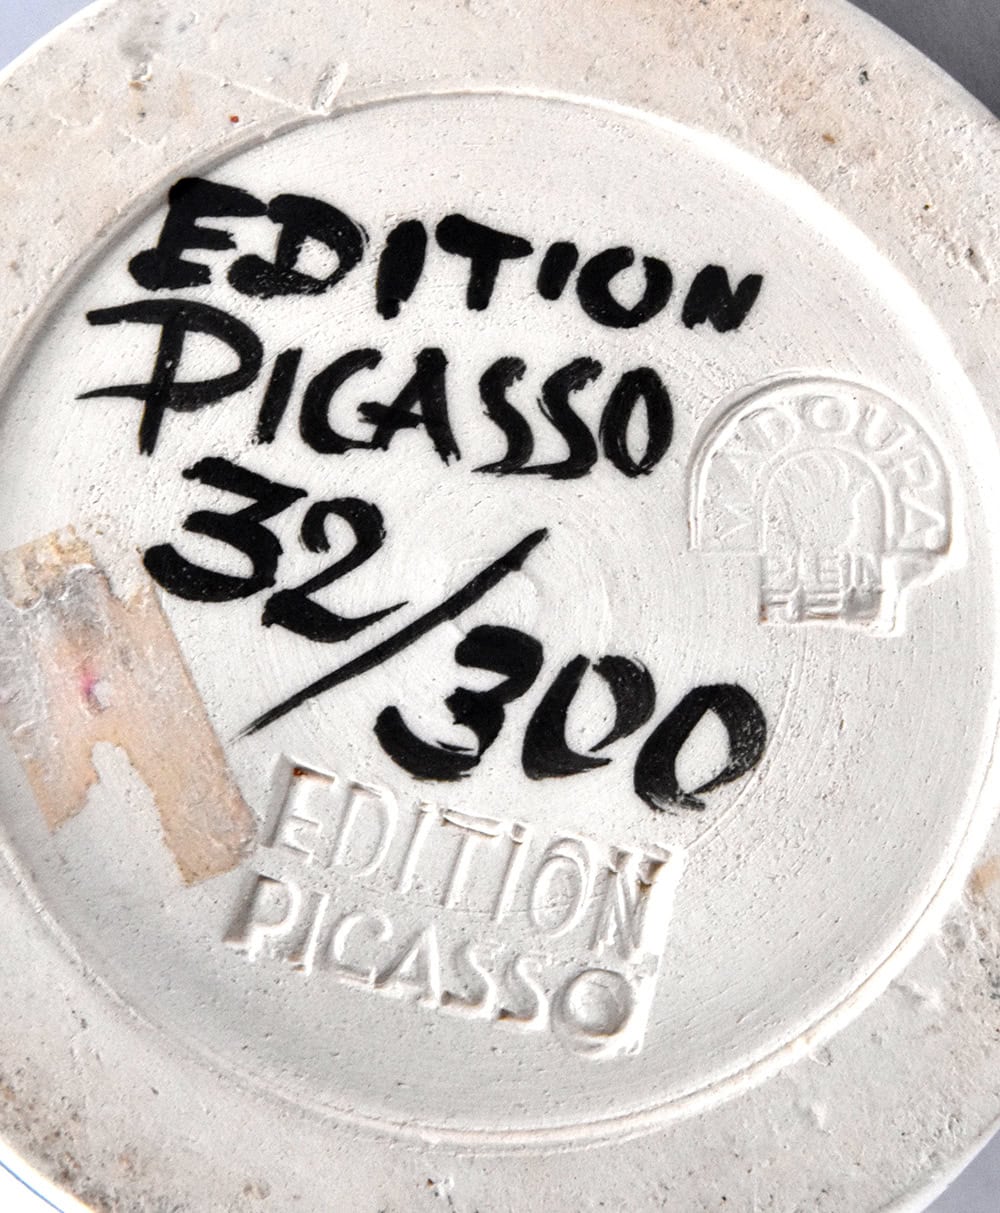 Pablo Picasso signature, Visage, 1959